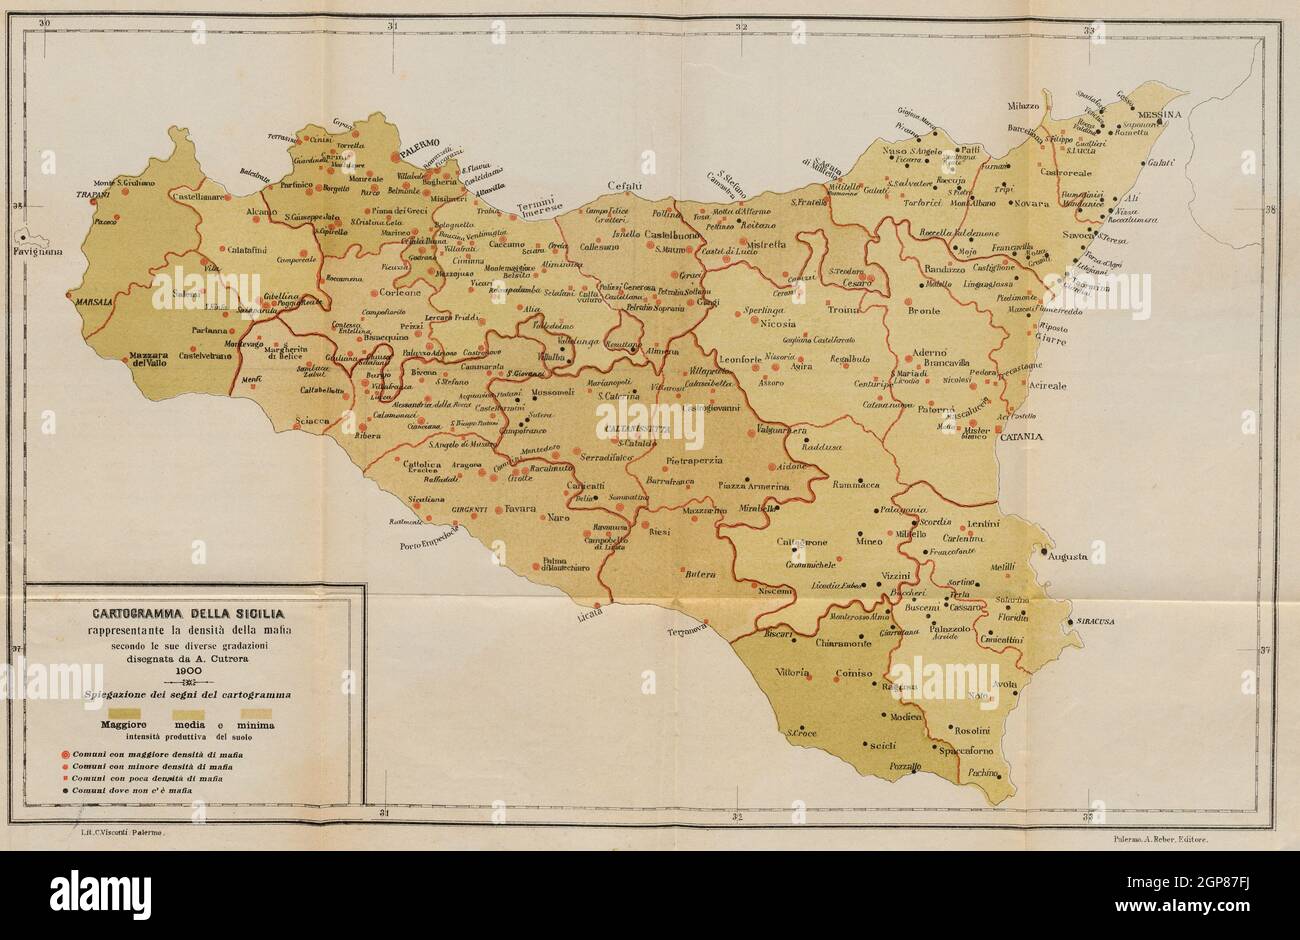 1900 Karte der Mafia-Präsenz in Sizilien. Städte mit Mafia-Aktivitäten sind als rote Punkte markiert. Die Mafia operierte hauptsächlich im Westen, in Gebieten mit reicher landwirtschaftlicher Produktivität. Stockfoto